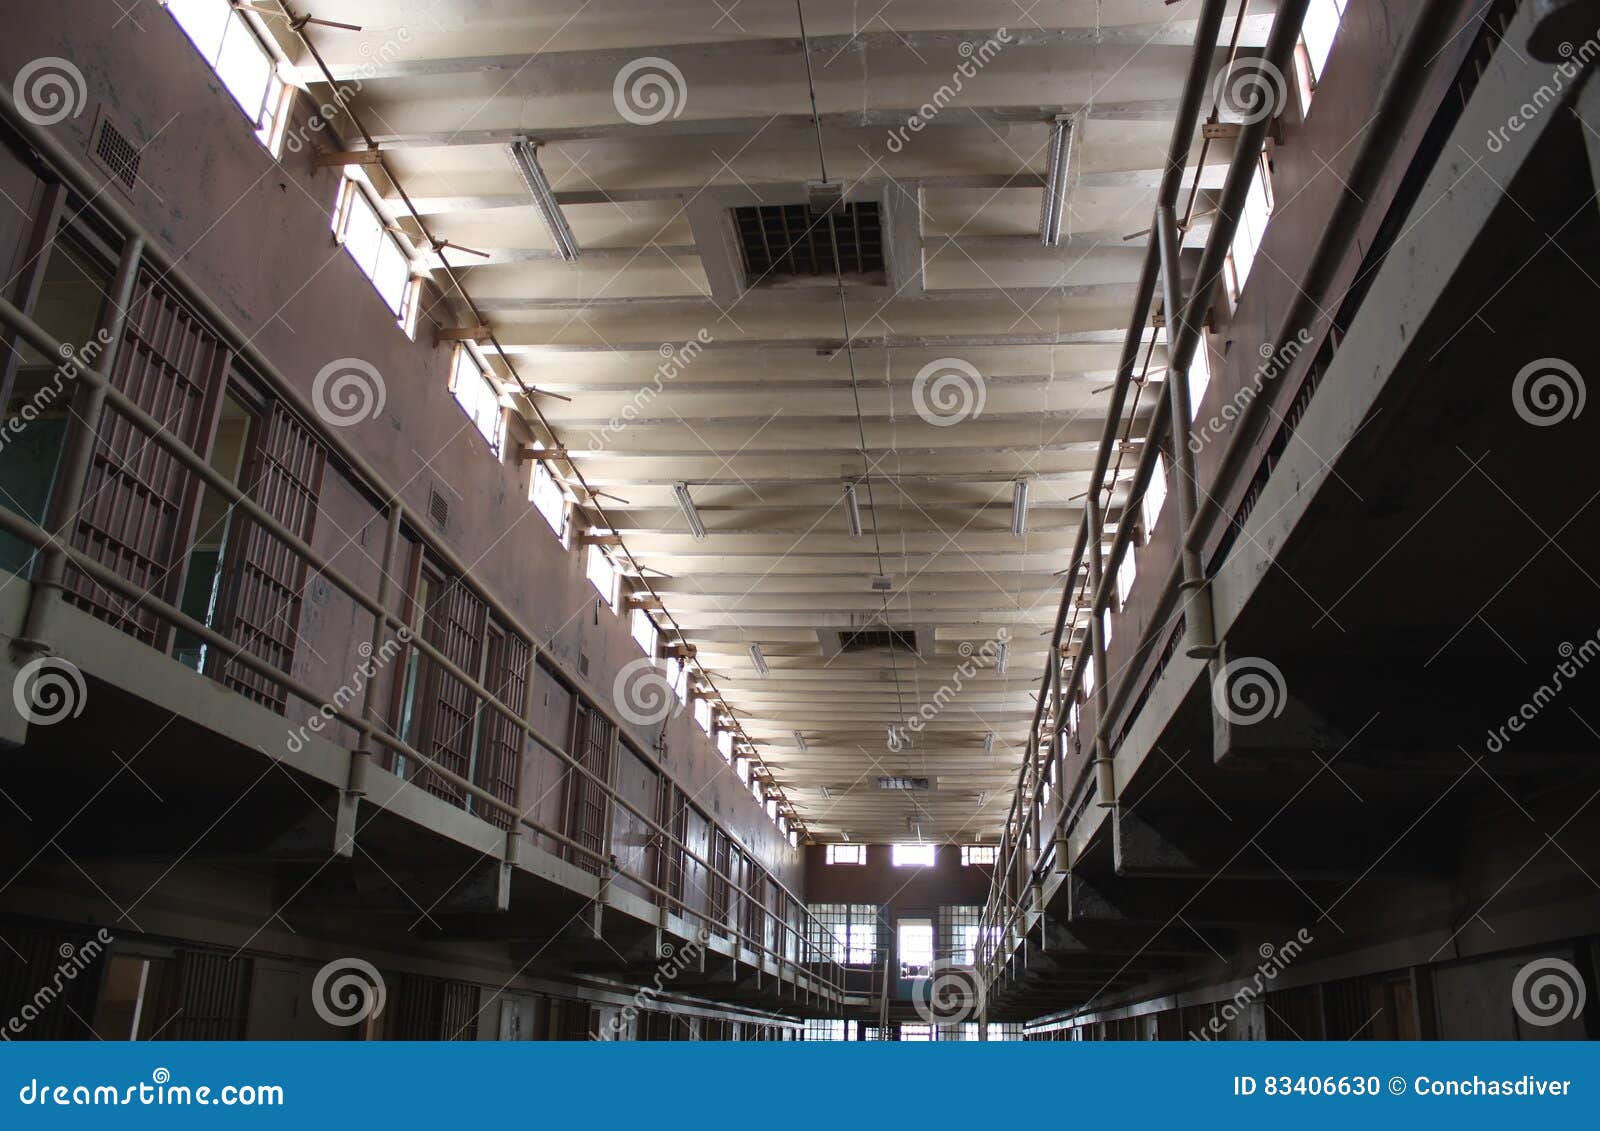 maximum security prison wing